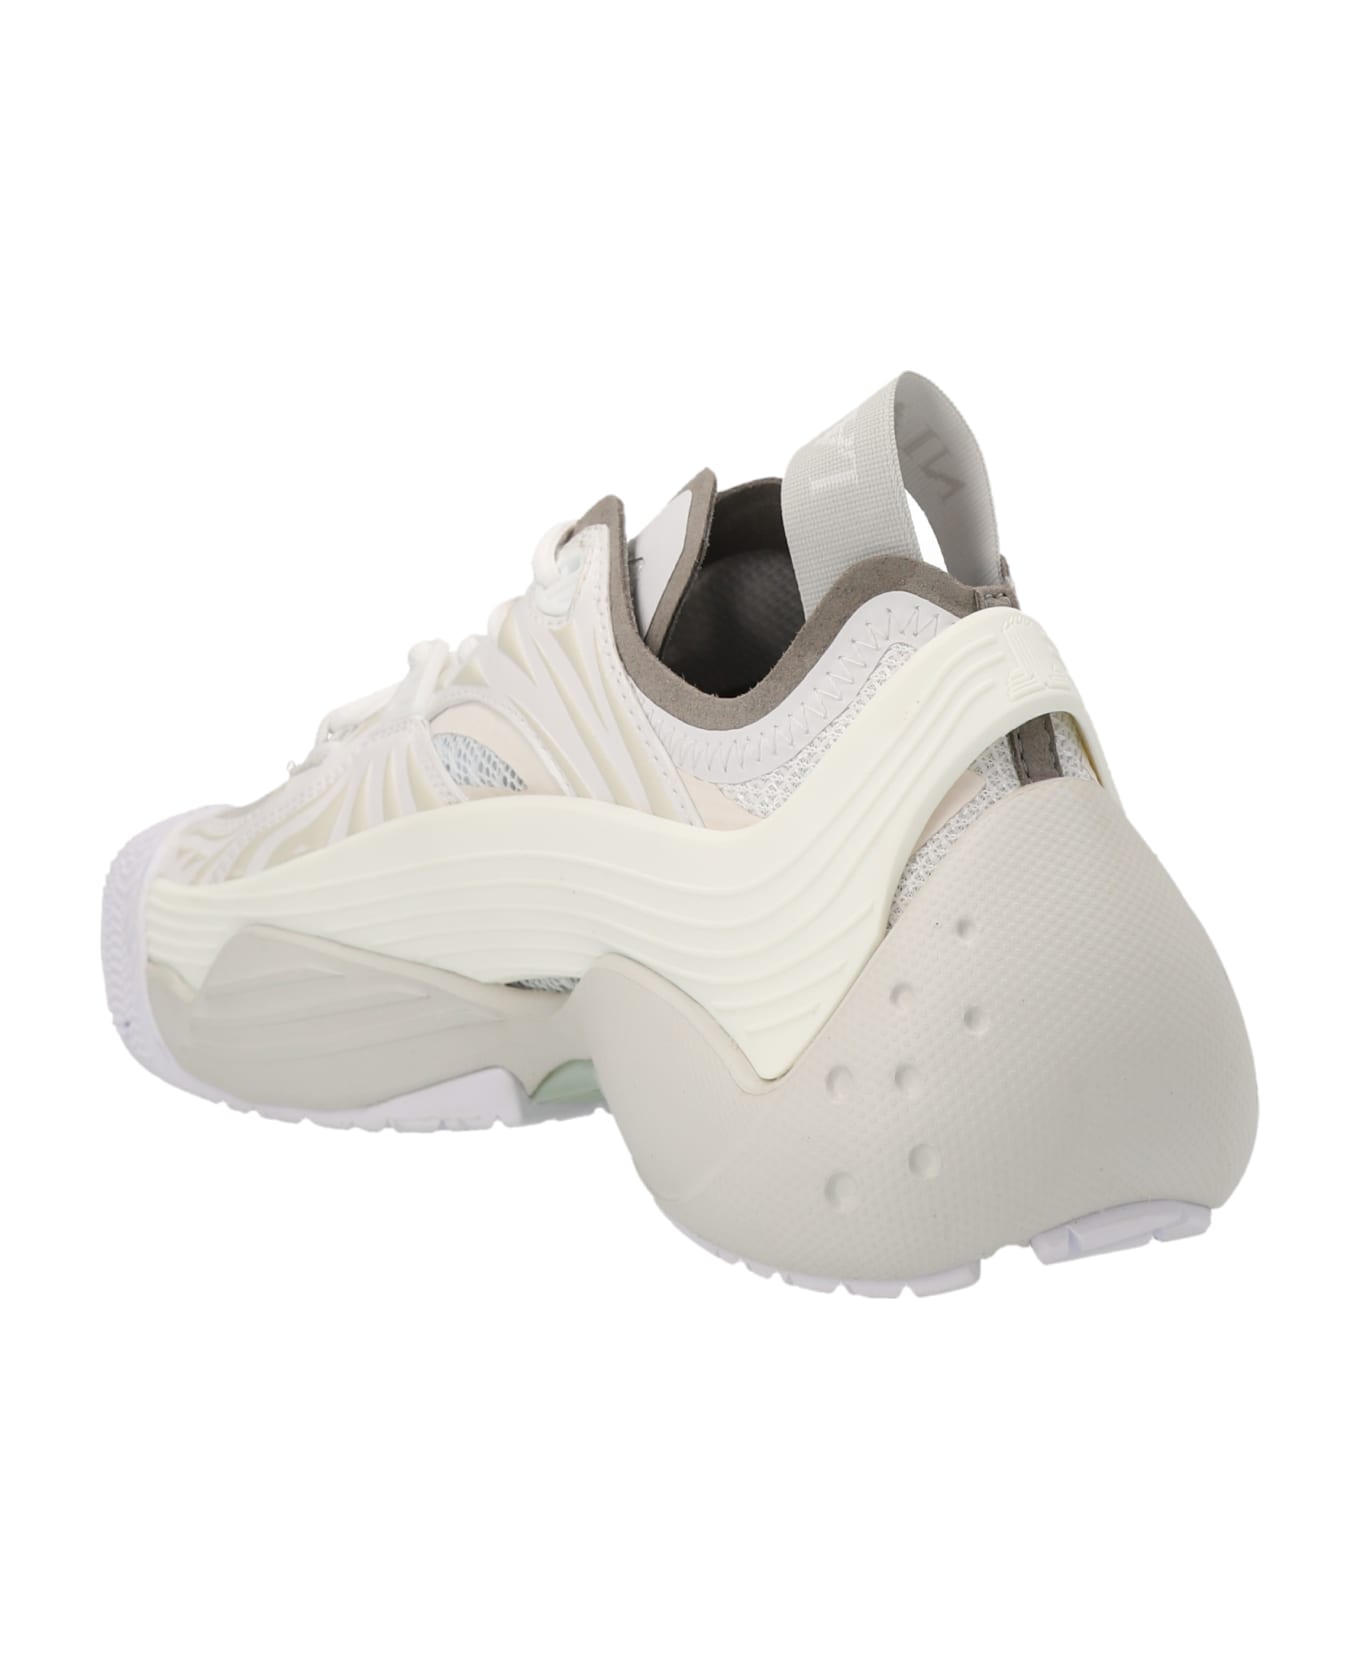 Lanvin 'flash-x' Sneakers - White